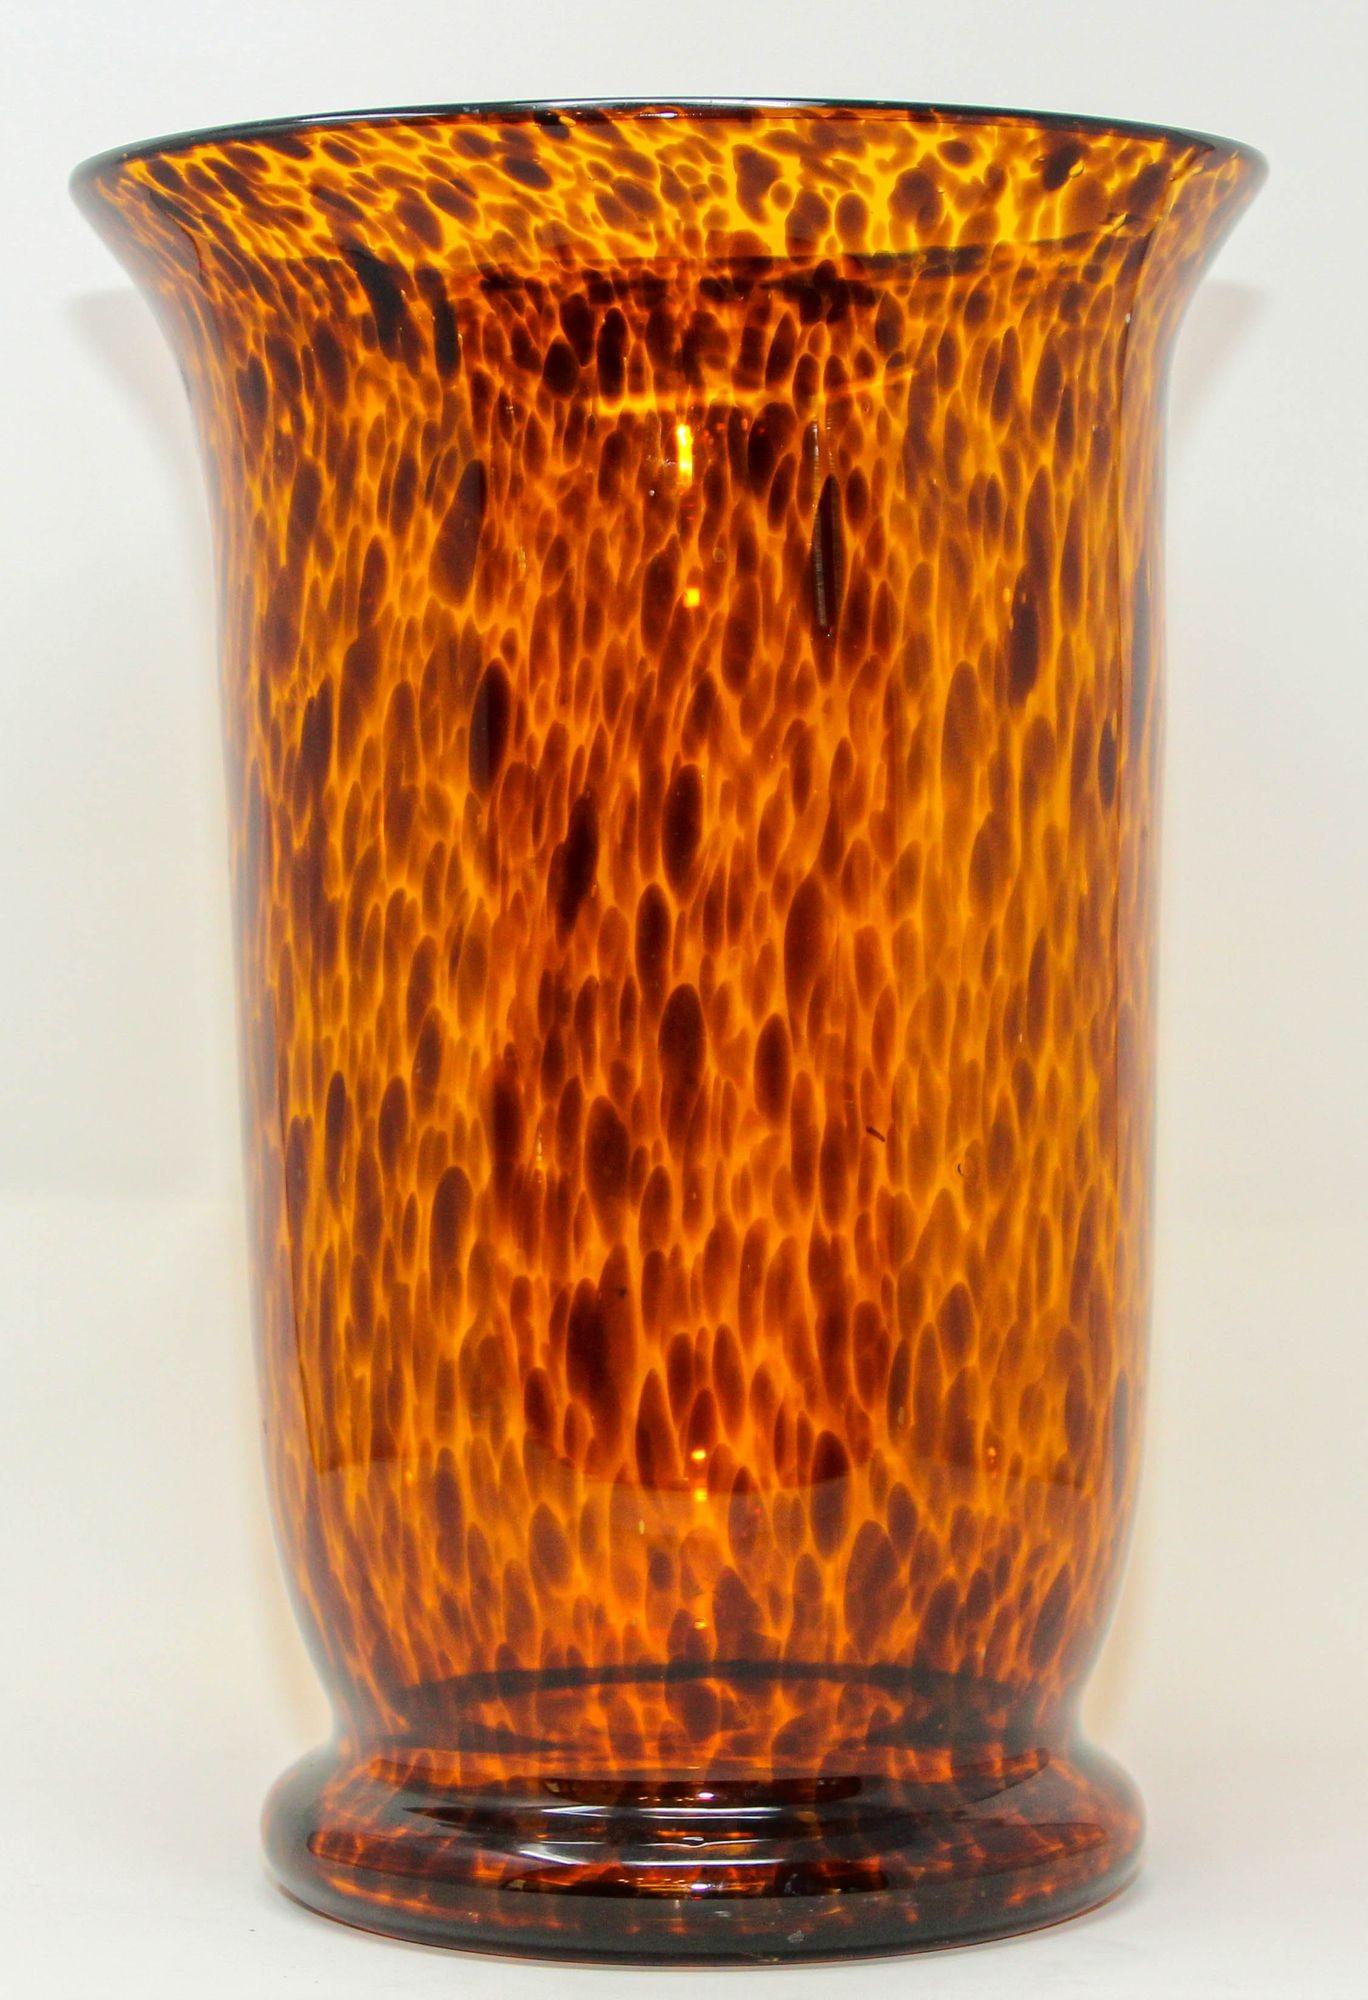 Vintage Faux Ecaille de Tortue Vase en verre soufflé.
Vase en verre soufflé en forme d'écaille de tortue de style moderne du milieu du siècle dernier.
Le motif tortue présente de magnifiques couleurs topaze, marron, caramel et ambre.
Voici un